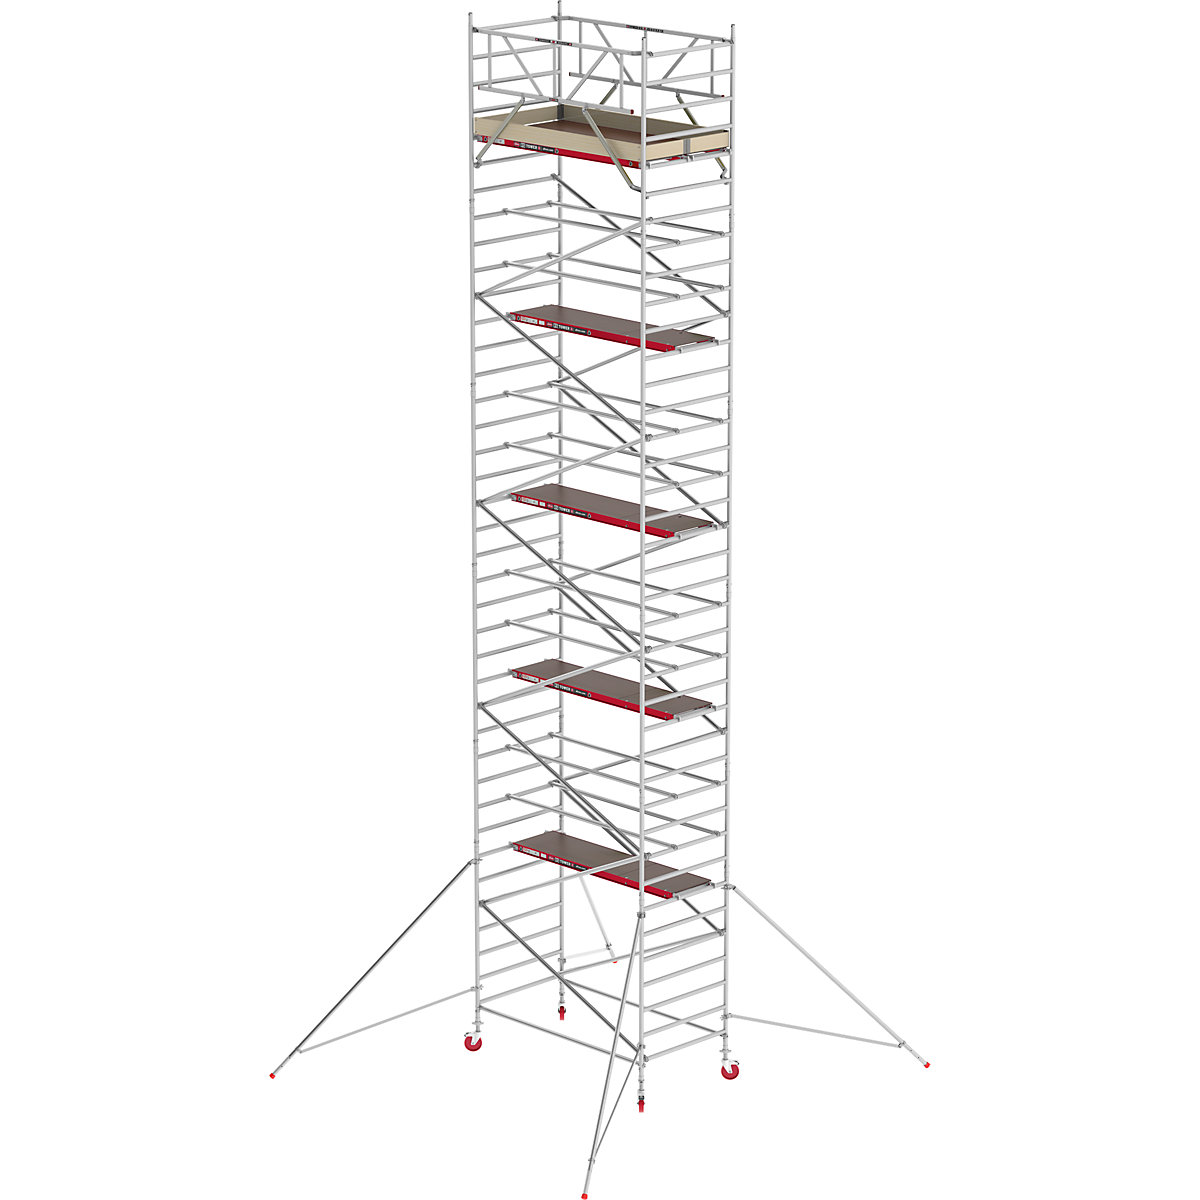 Schelă mobilă RS TOWER 42 lată – Altrex, platformă din lemn, lungime 2,45 m, înălțime de lucru 12,20 m-7